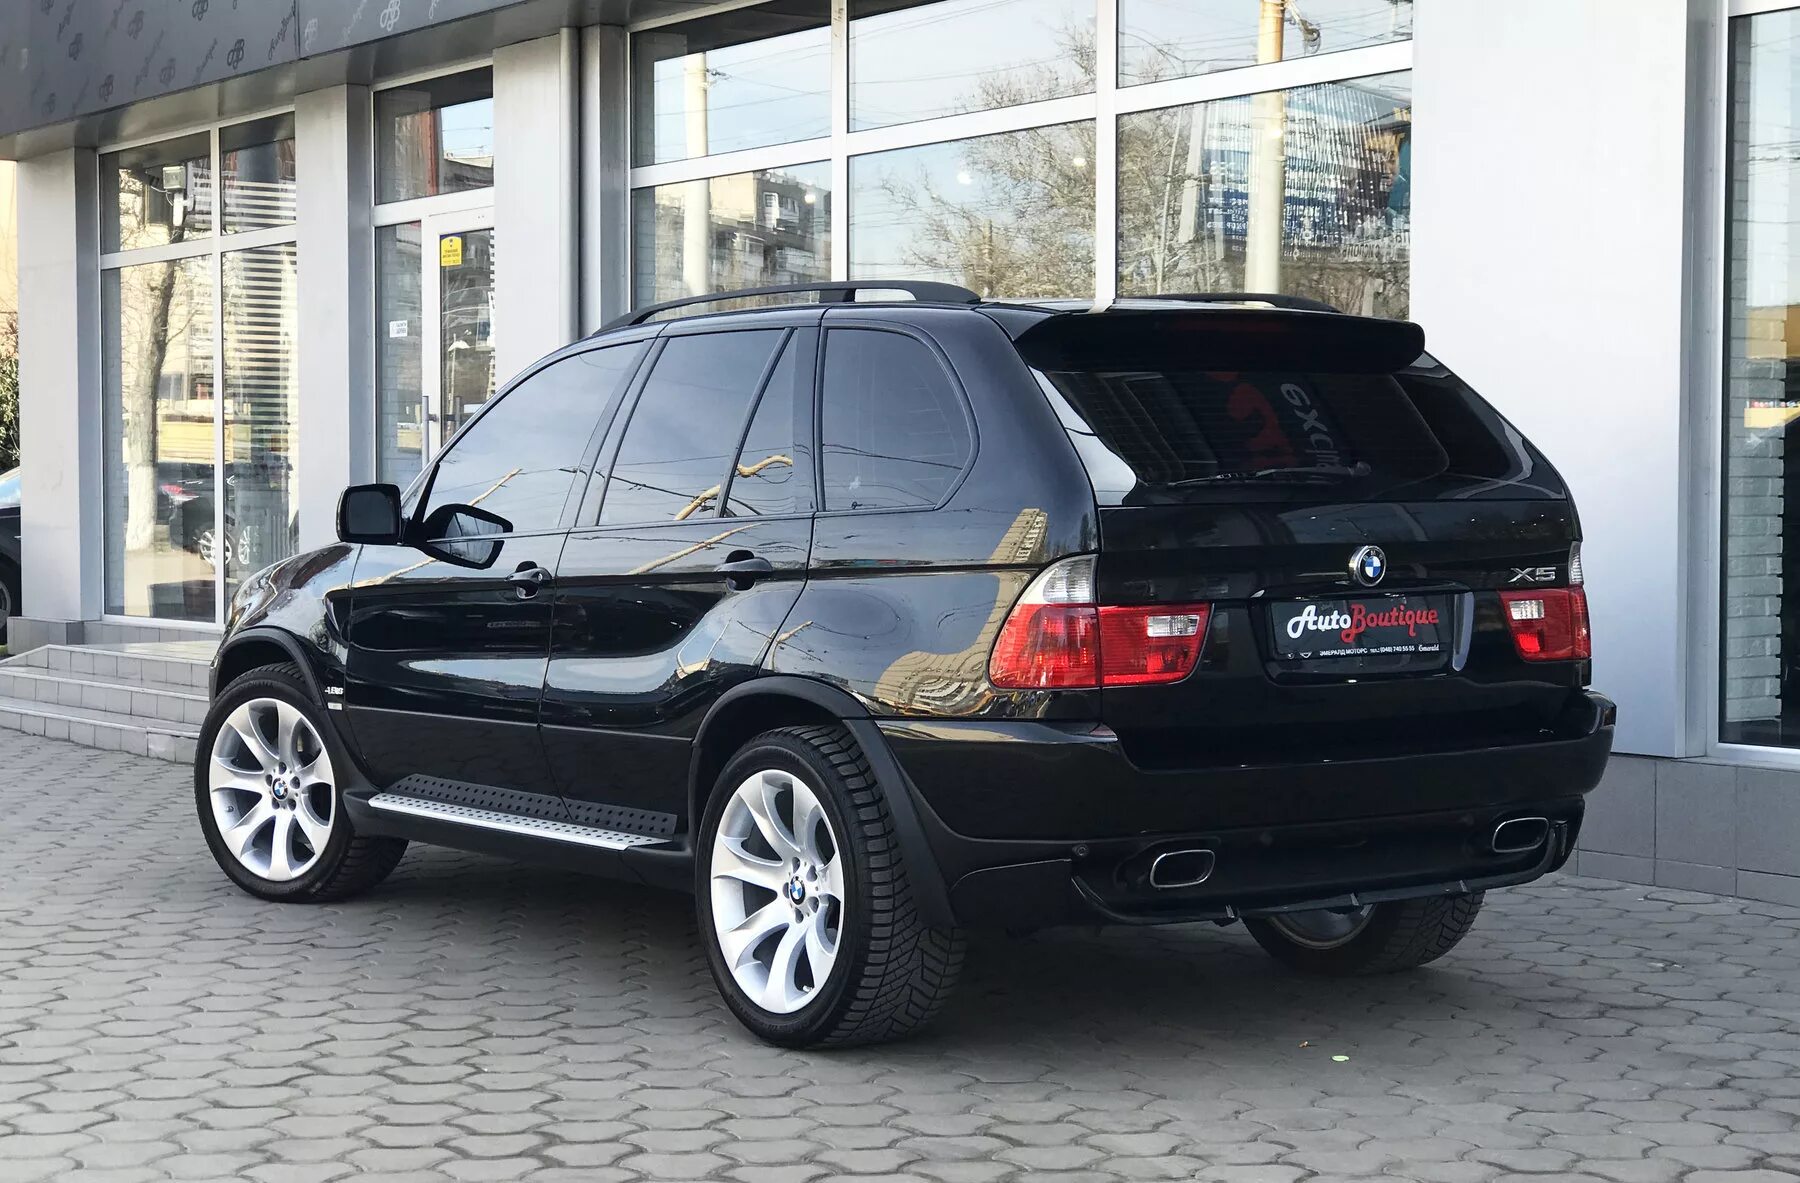 БМВ х5 е53 4.8. BMW x5 2004 4.8. X5 BMW x5 2005. BMW x5 2005 черный. Купить бмв х5 4.8